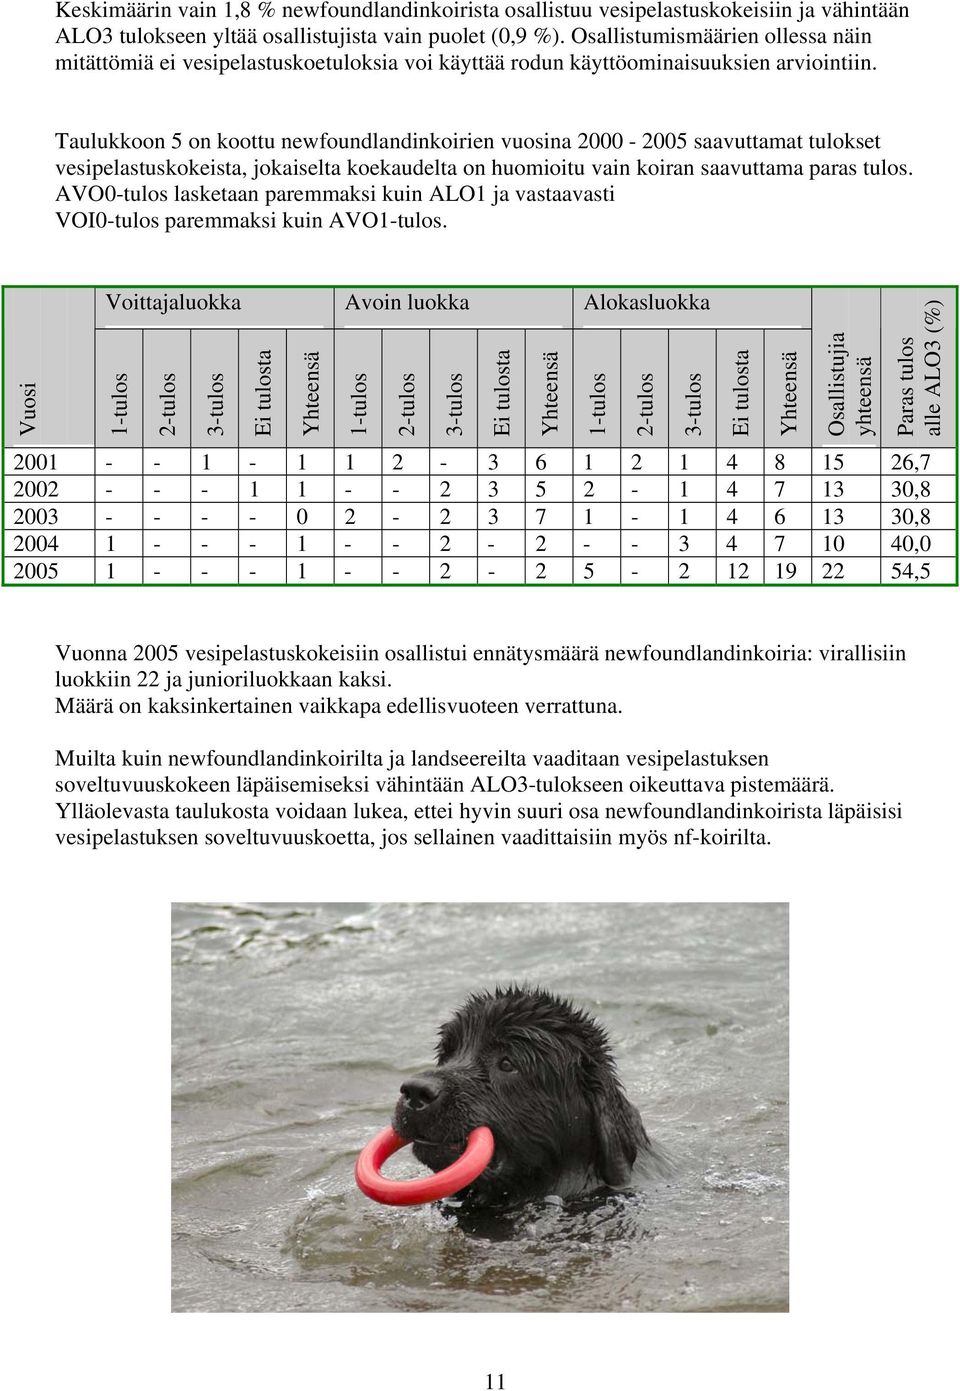 Taulukkoon 5 on koottu newfoundlandinkoirien vuosina 2000-2005 saavuttamat tulokset vesipelastuskokeista, jokaiselta koekaudelta on huomioitu vain koiran saavuttama paras tulos.